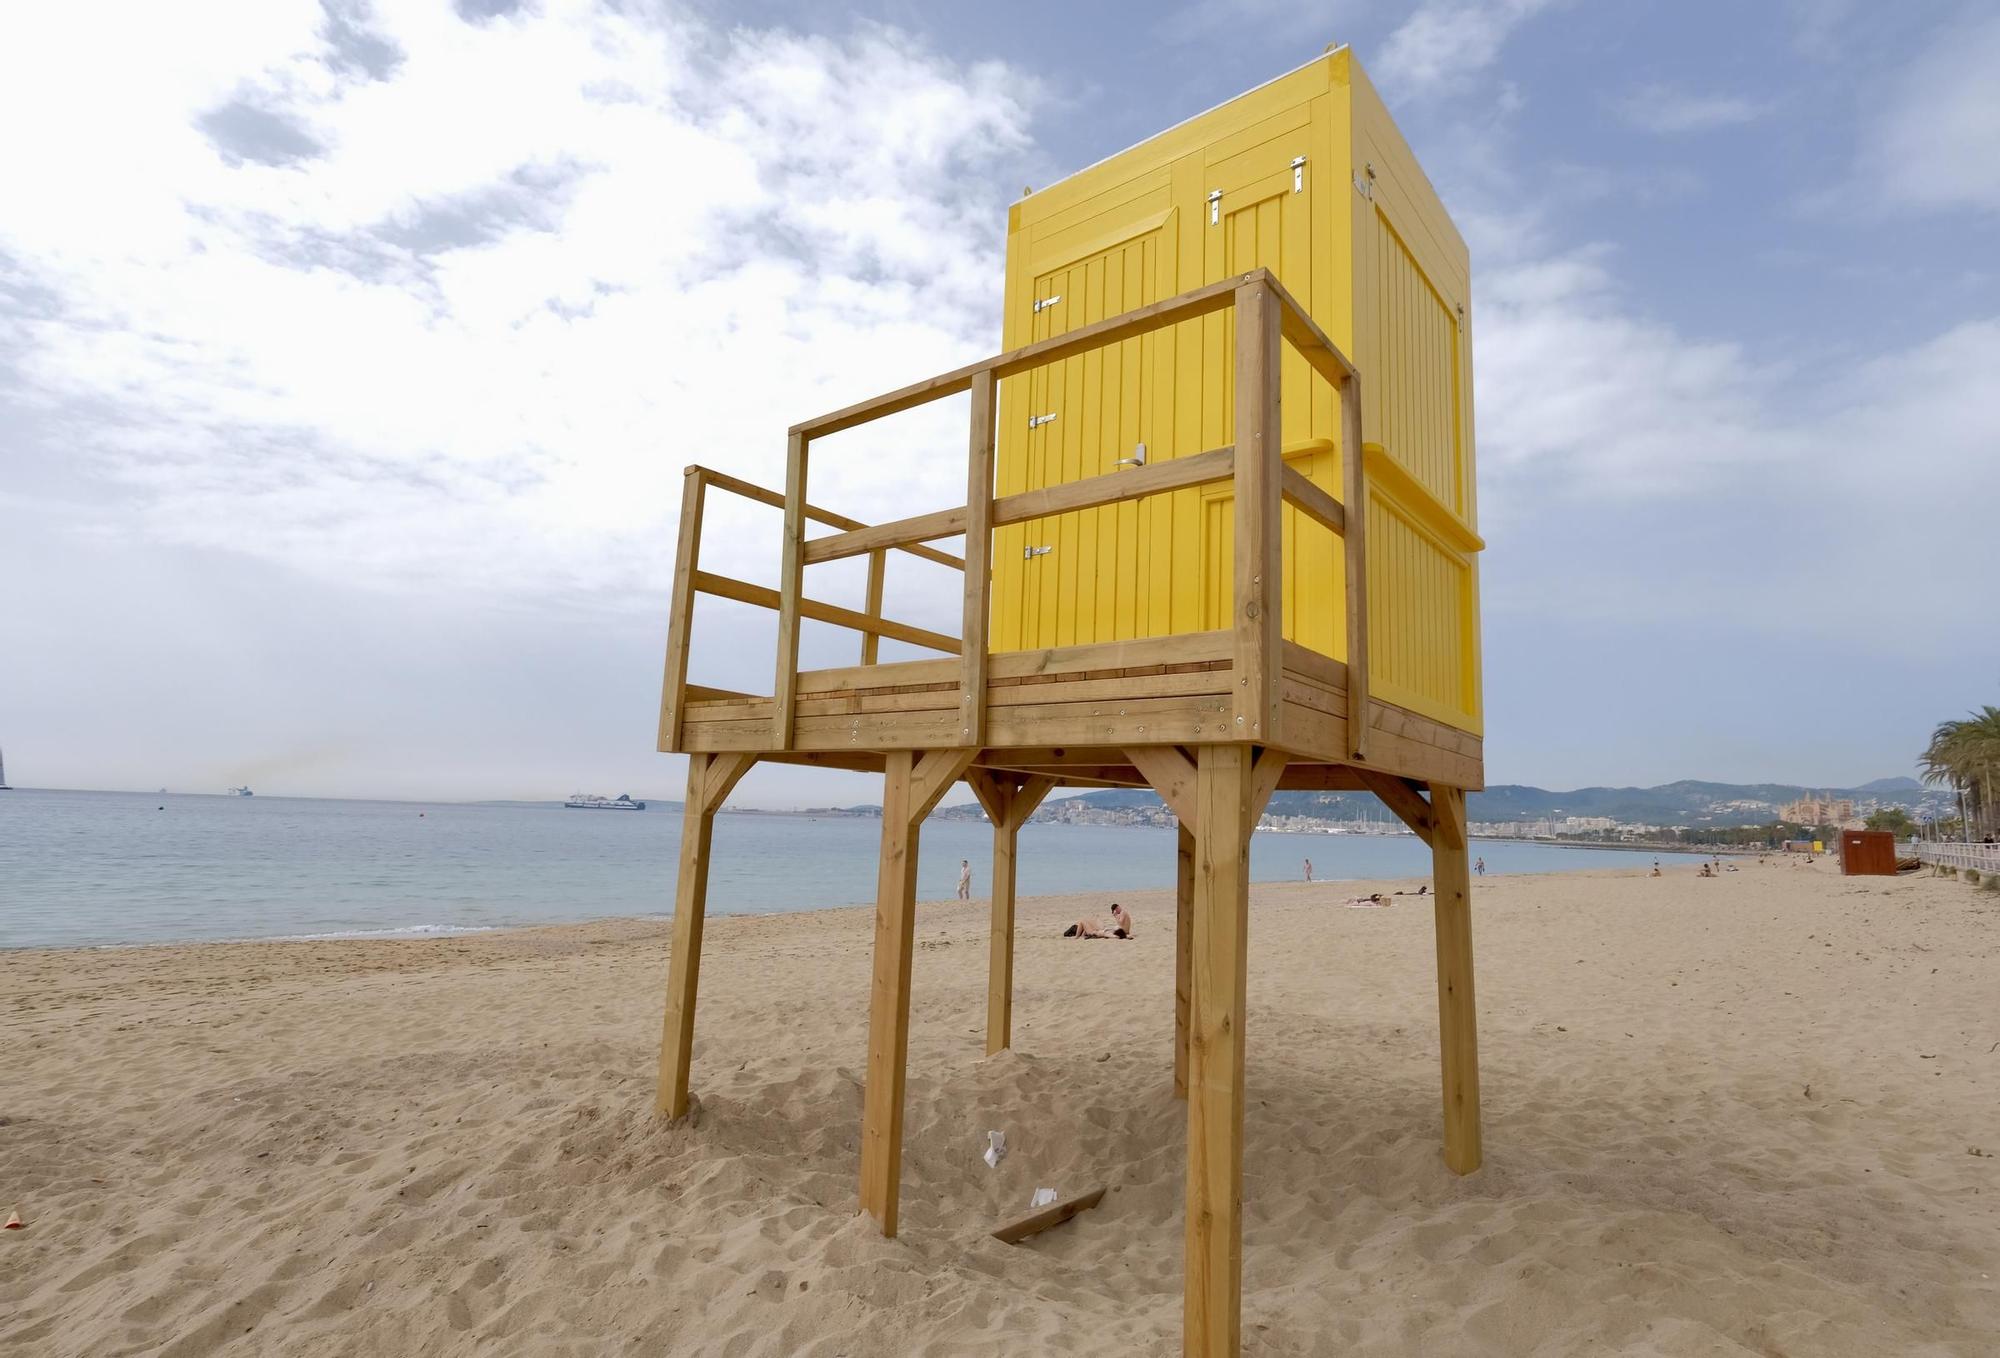 Así son las nuevas torres amarillas de socorristas que estrenan las playas de Palma